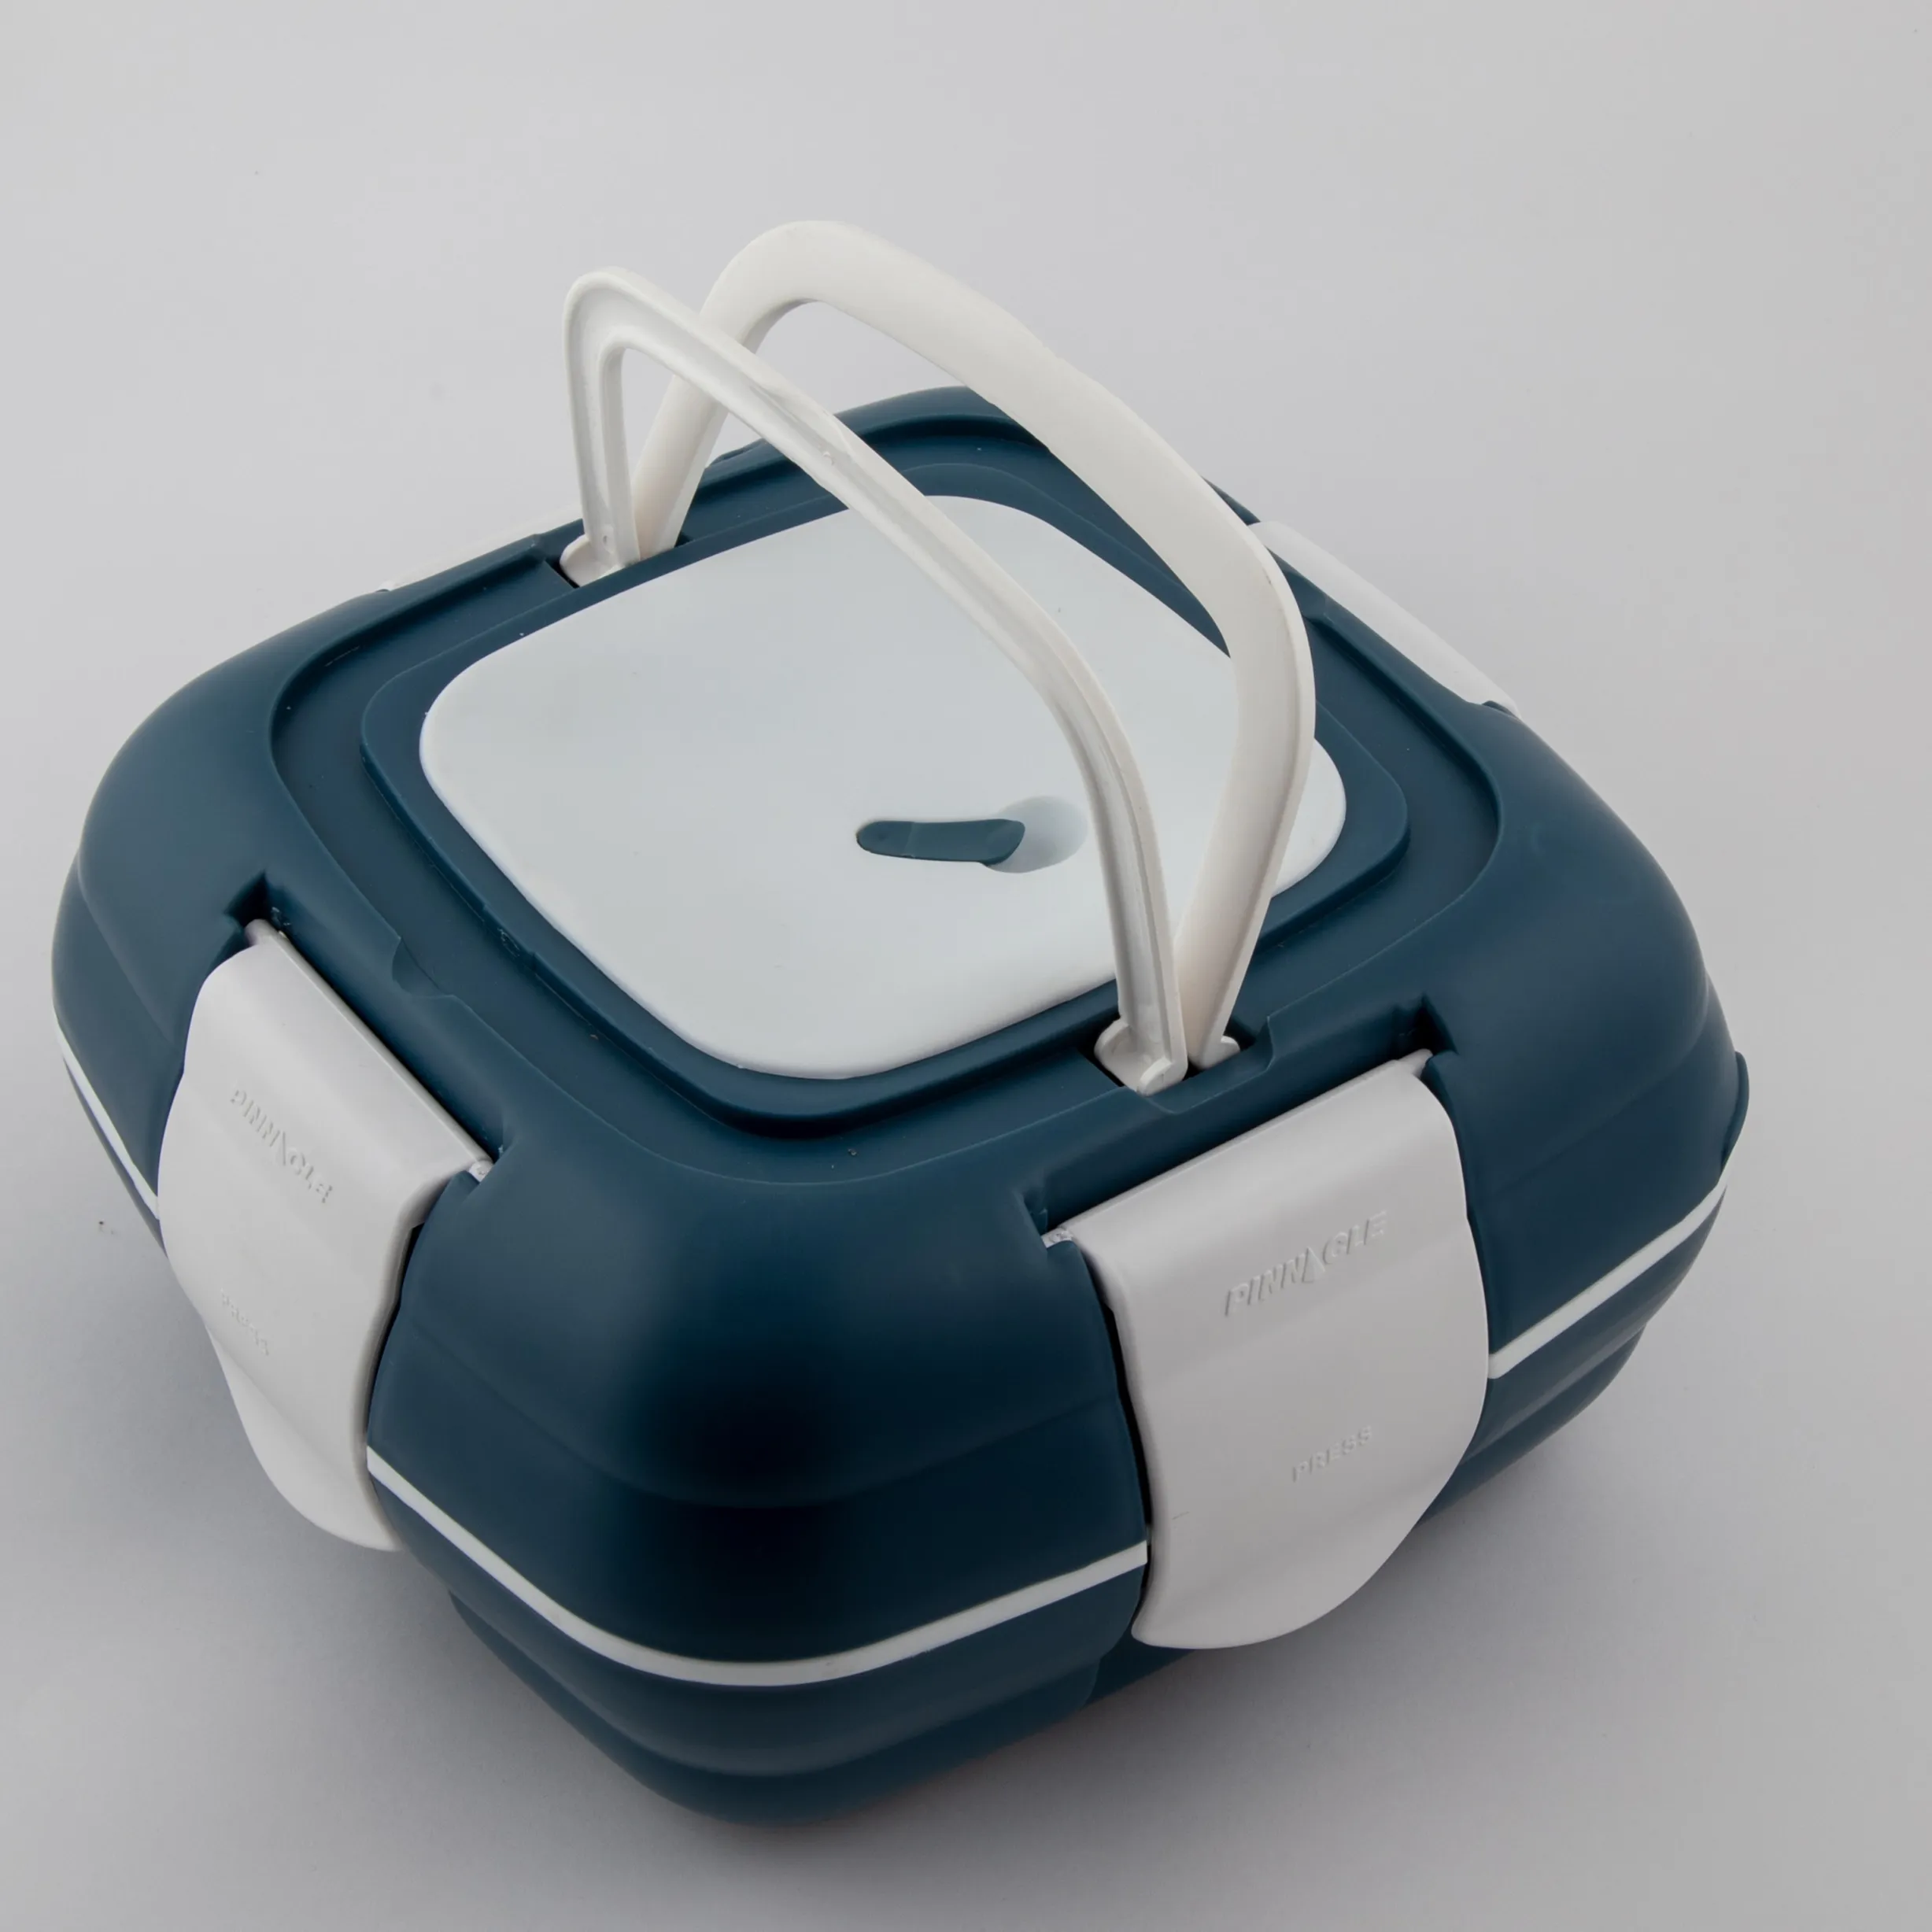 Paloma mikrodalga güvenli güveç 1000ml ayrılabilir yalıtımlı Bento yemek kutusu kutusu seyahat açık